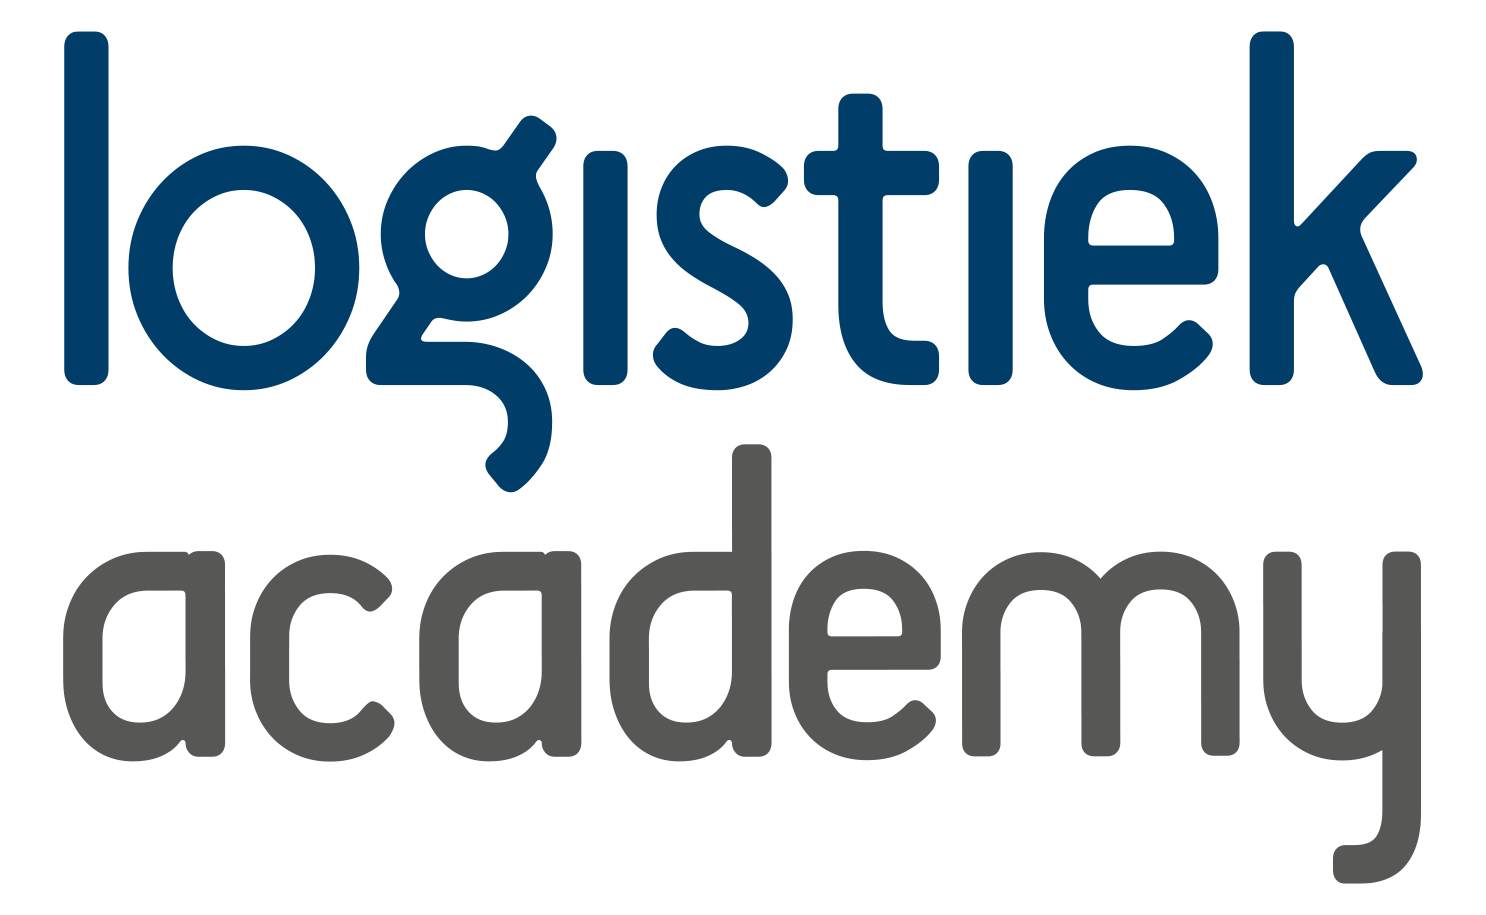 Logistiek Academy (Vakmedianet)